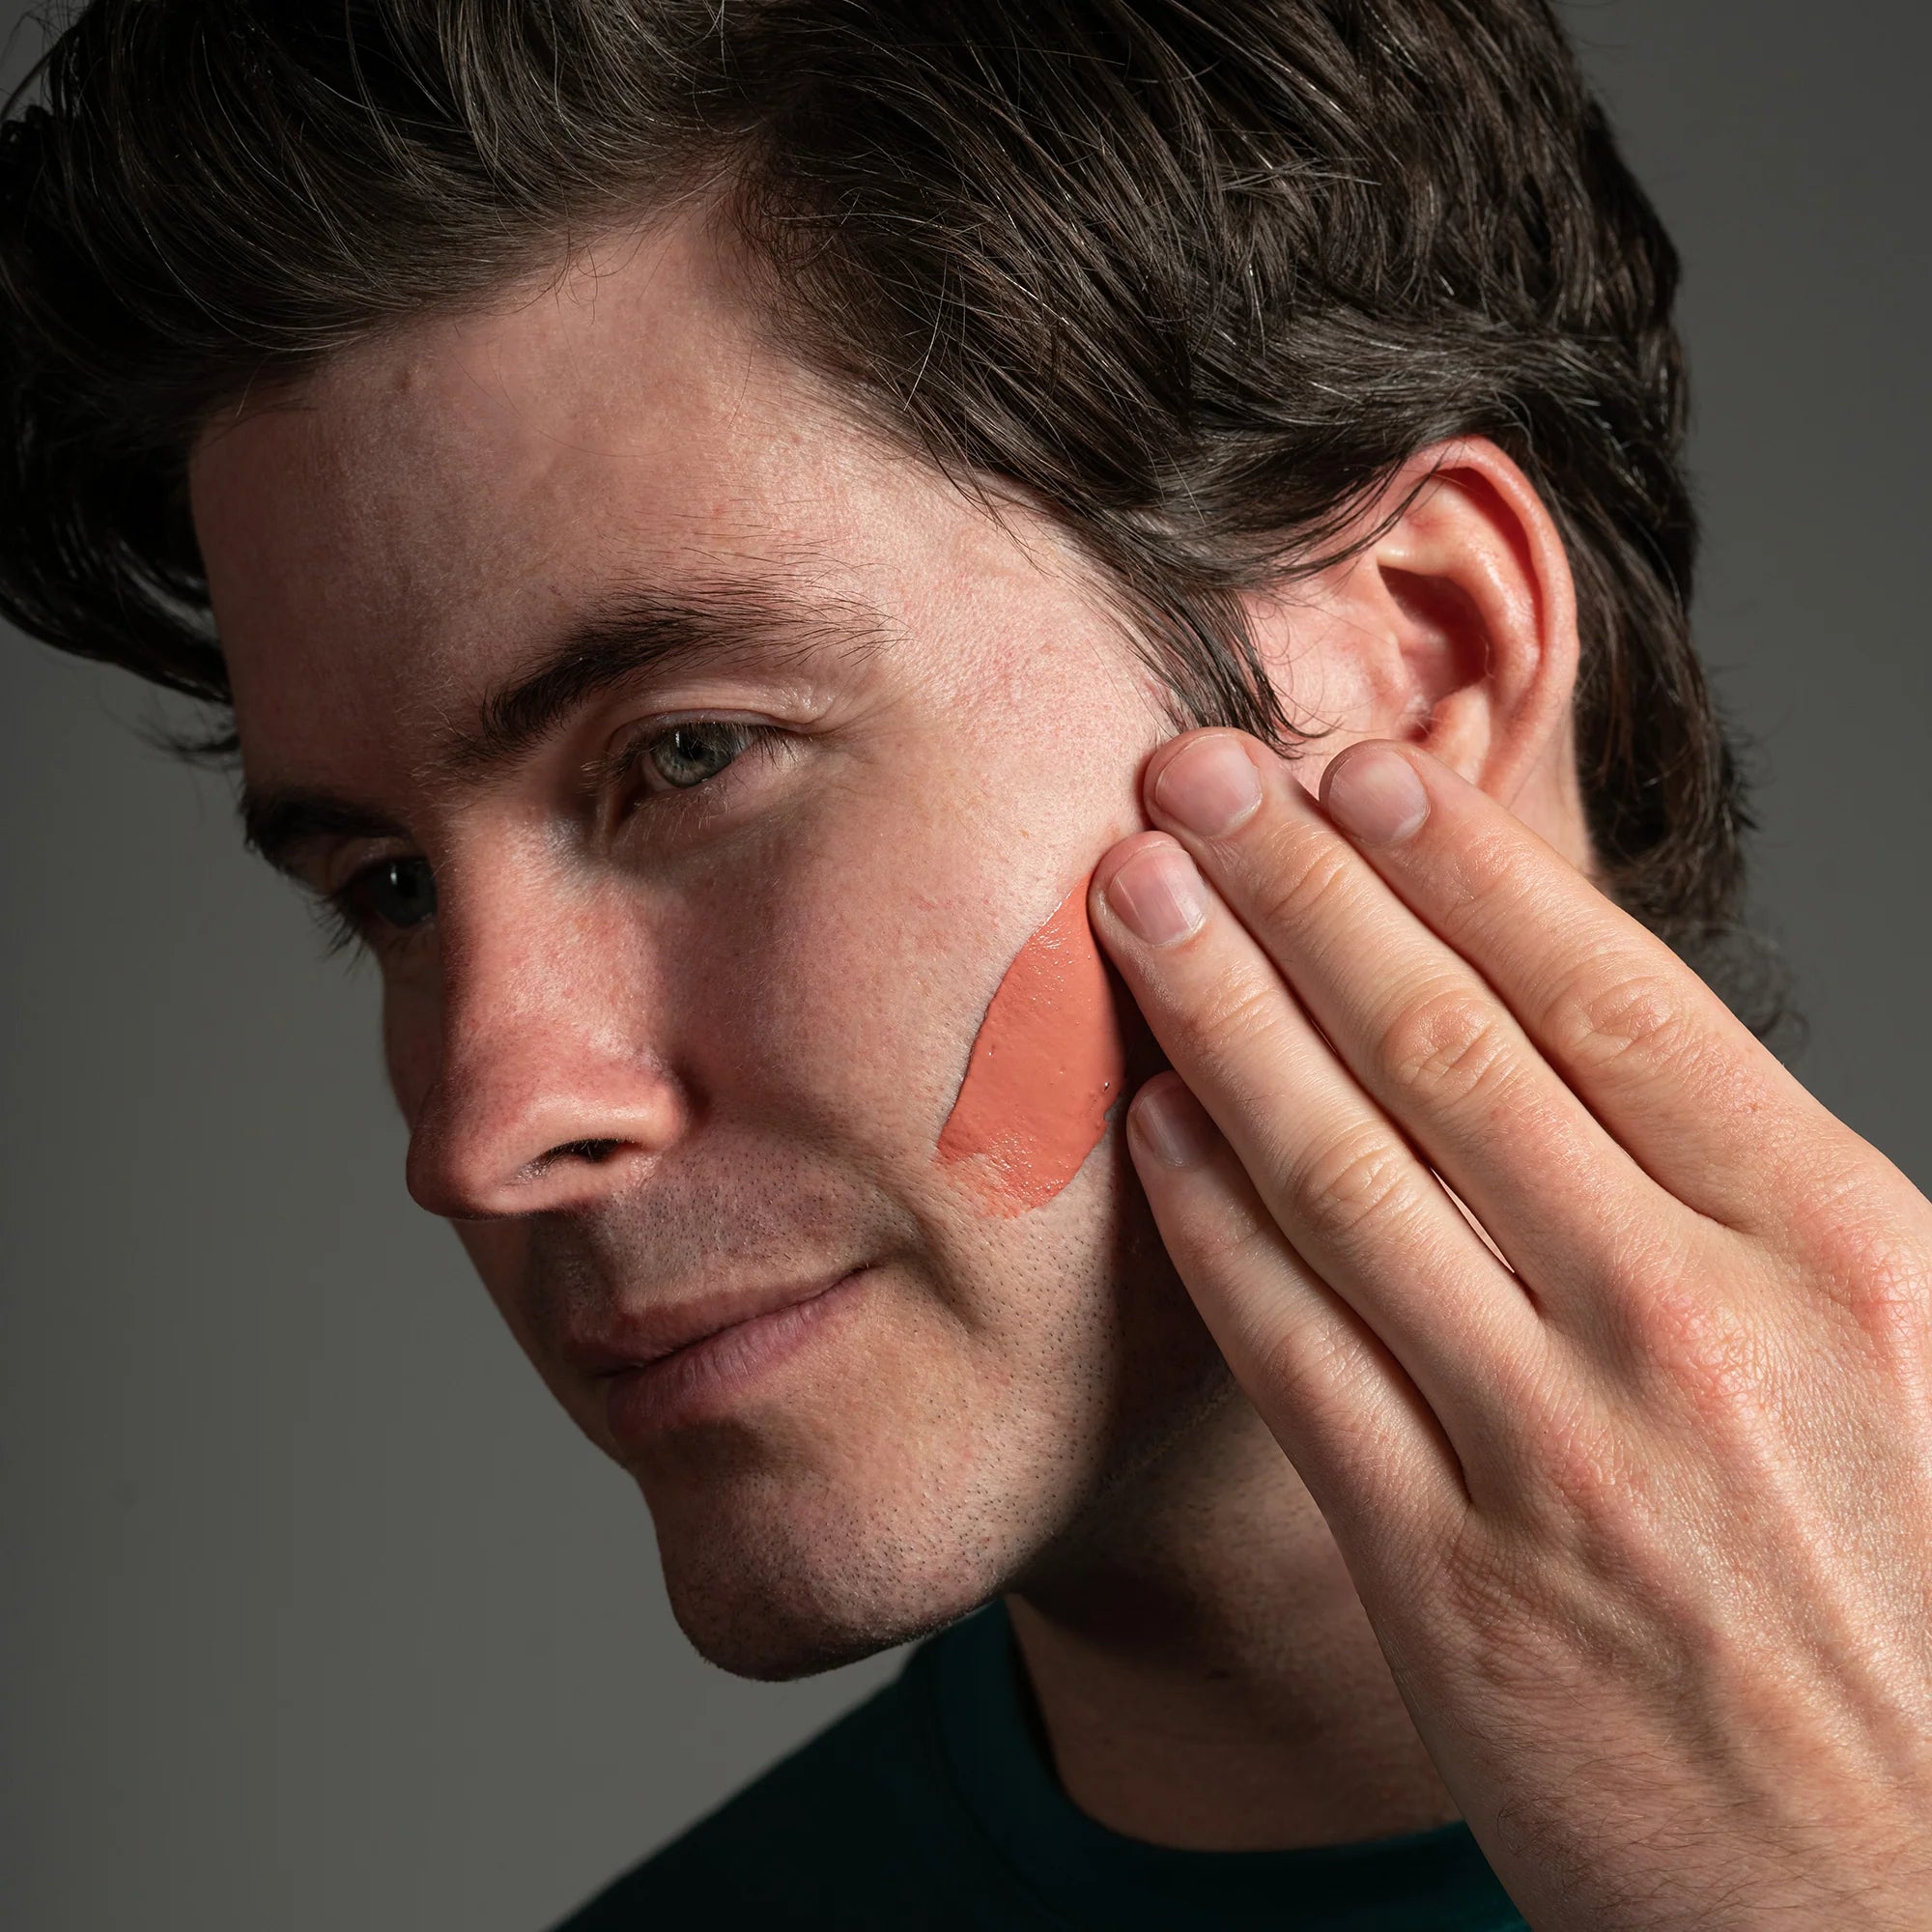 Facial Skincare For Men Guide